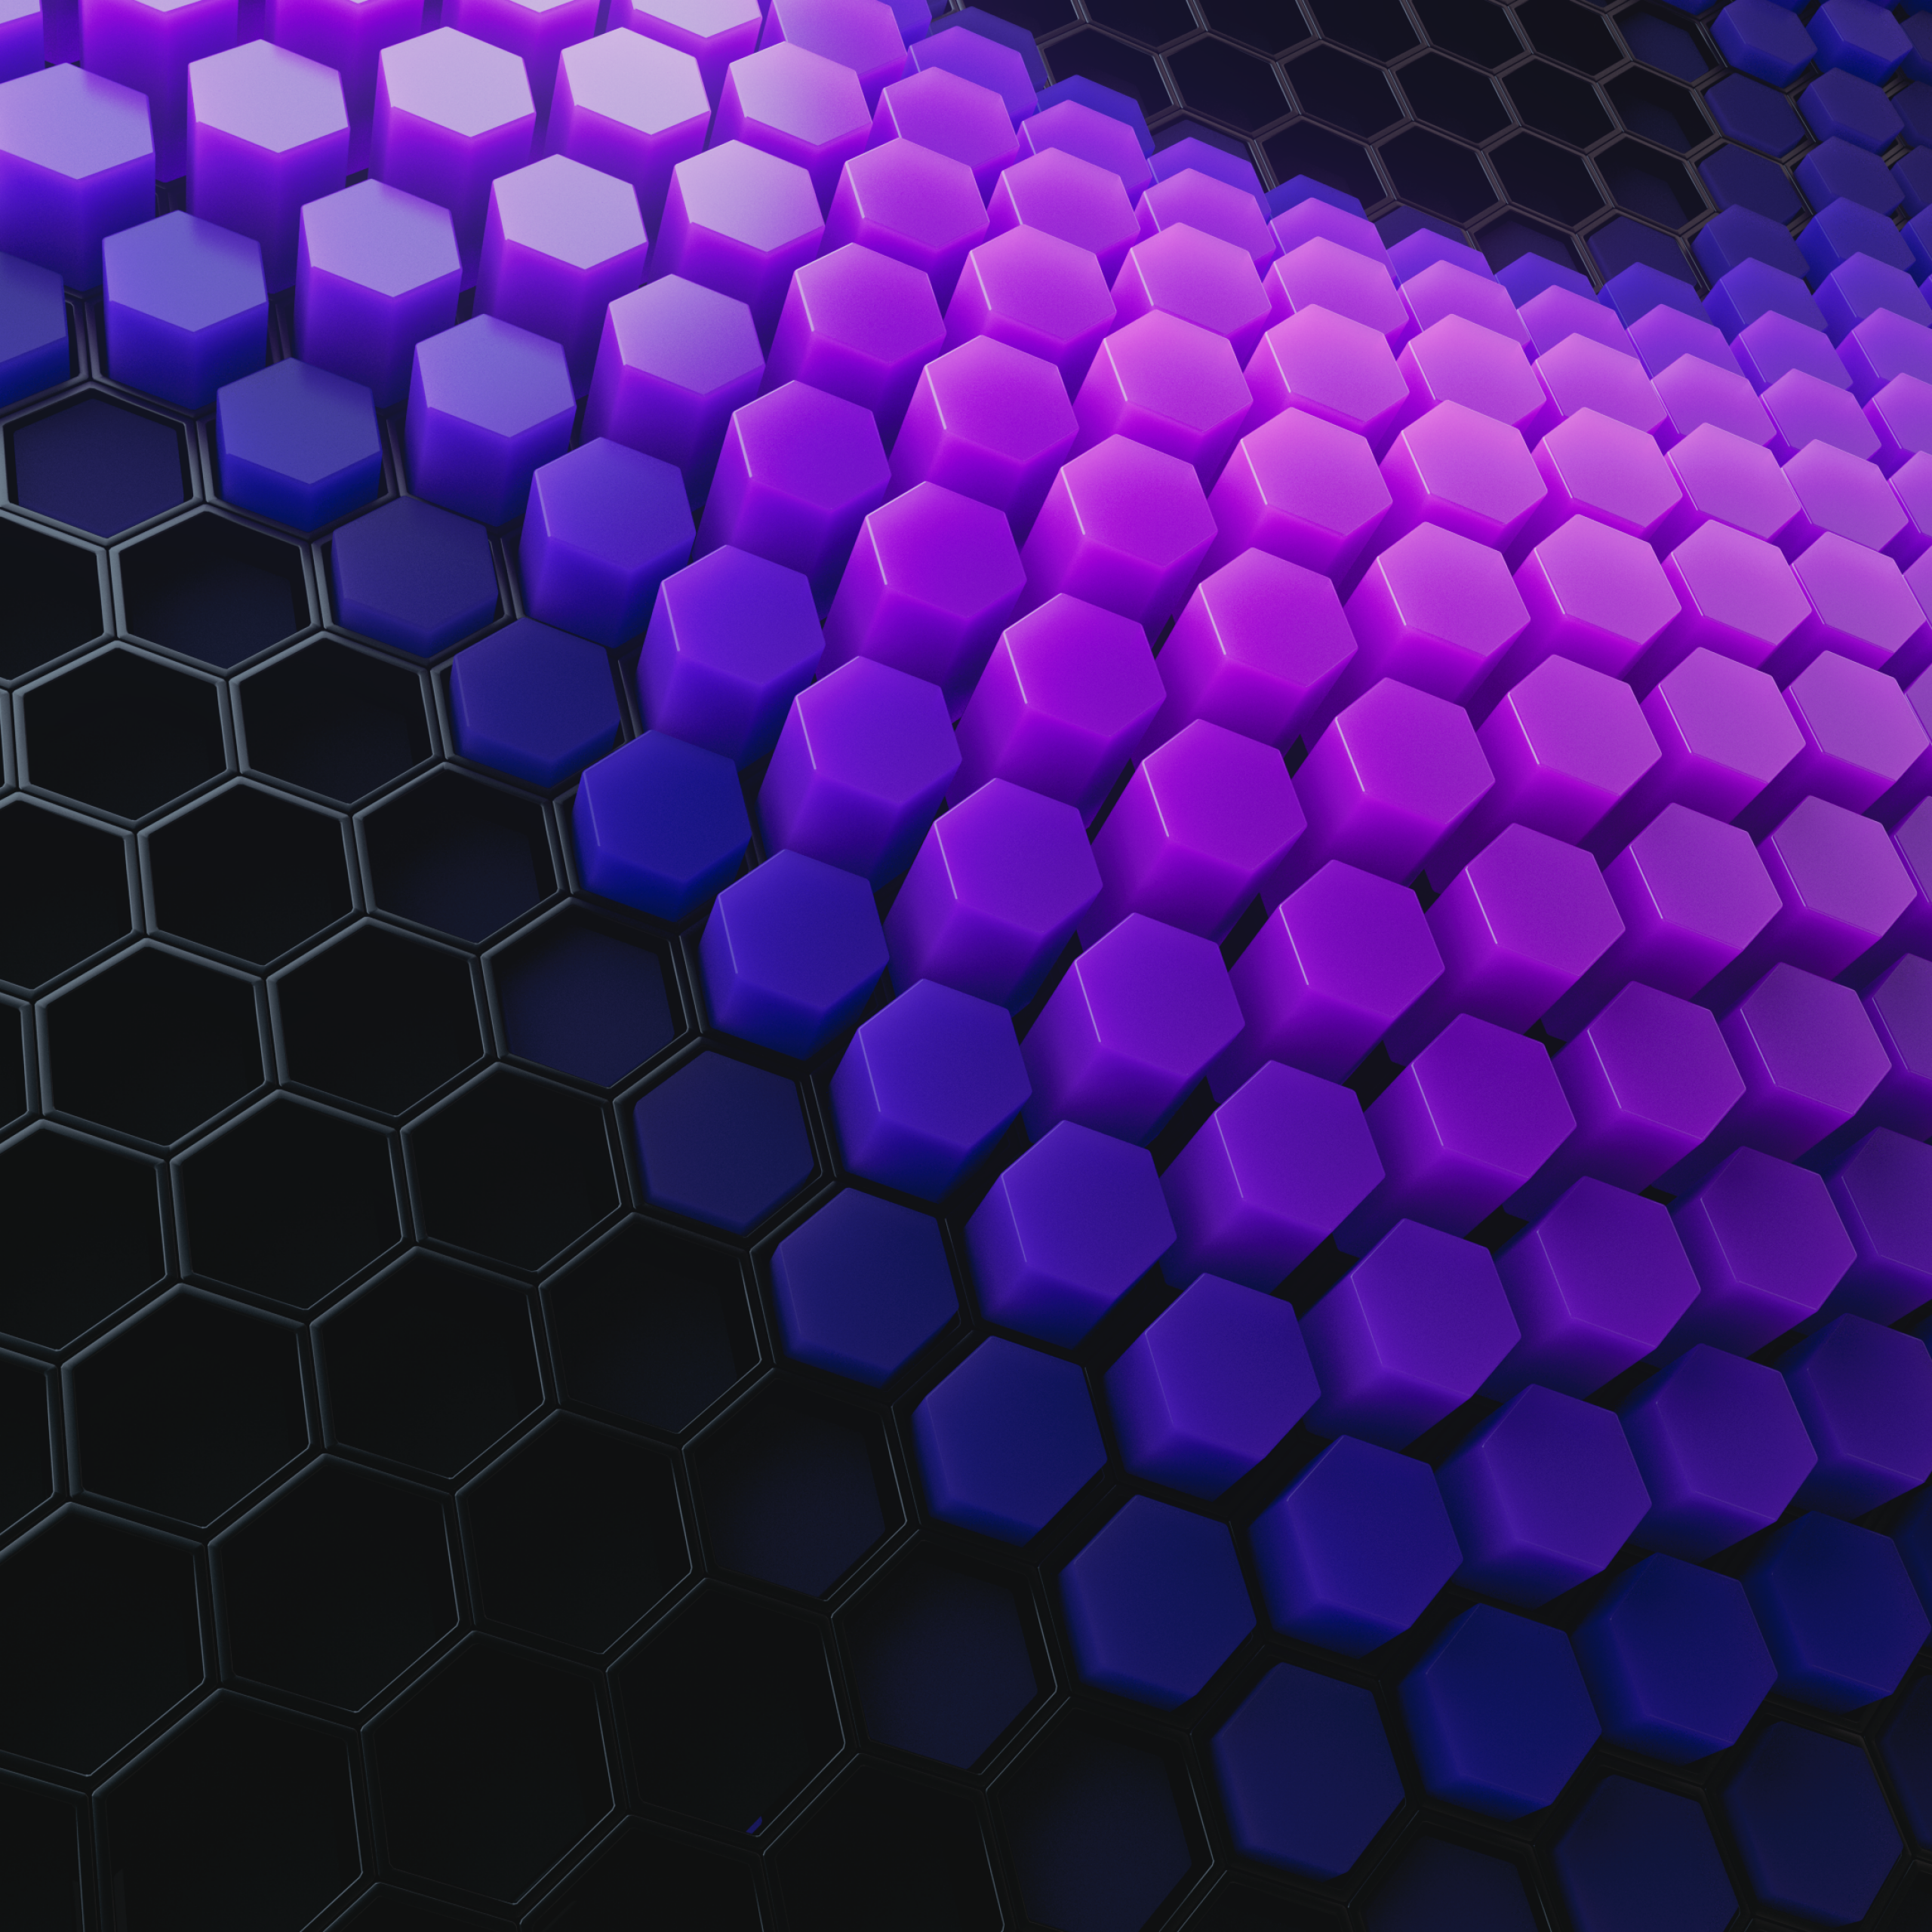 Hình nền hexagon 4K là một thiết kế trừu tượng tuyệt vời để tỏa sáng trên màn hình của bạn. Với mẫu trừu tượng độc đáo và phong cảnh đẹp mắt, thiết kế này sẽ tạo cho màn hình của bạn một cảm giác khôi hài và đầy sáng tạo. Hãy cùng khám phá và tận hưởng sự độc đáo của hình nền hexagon này!